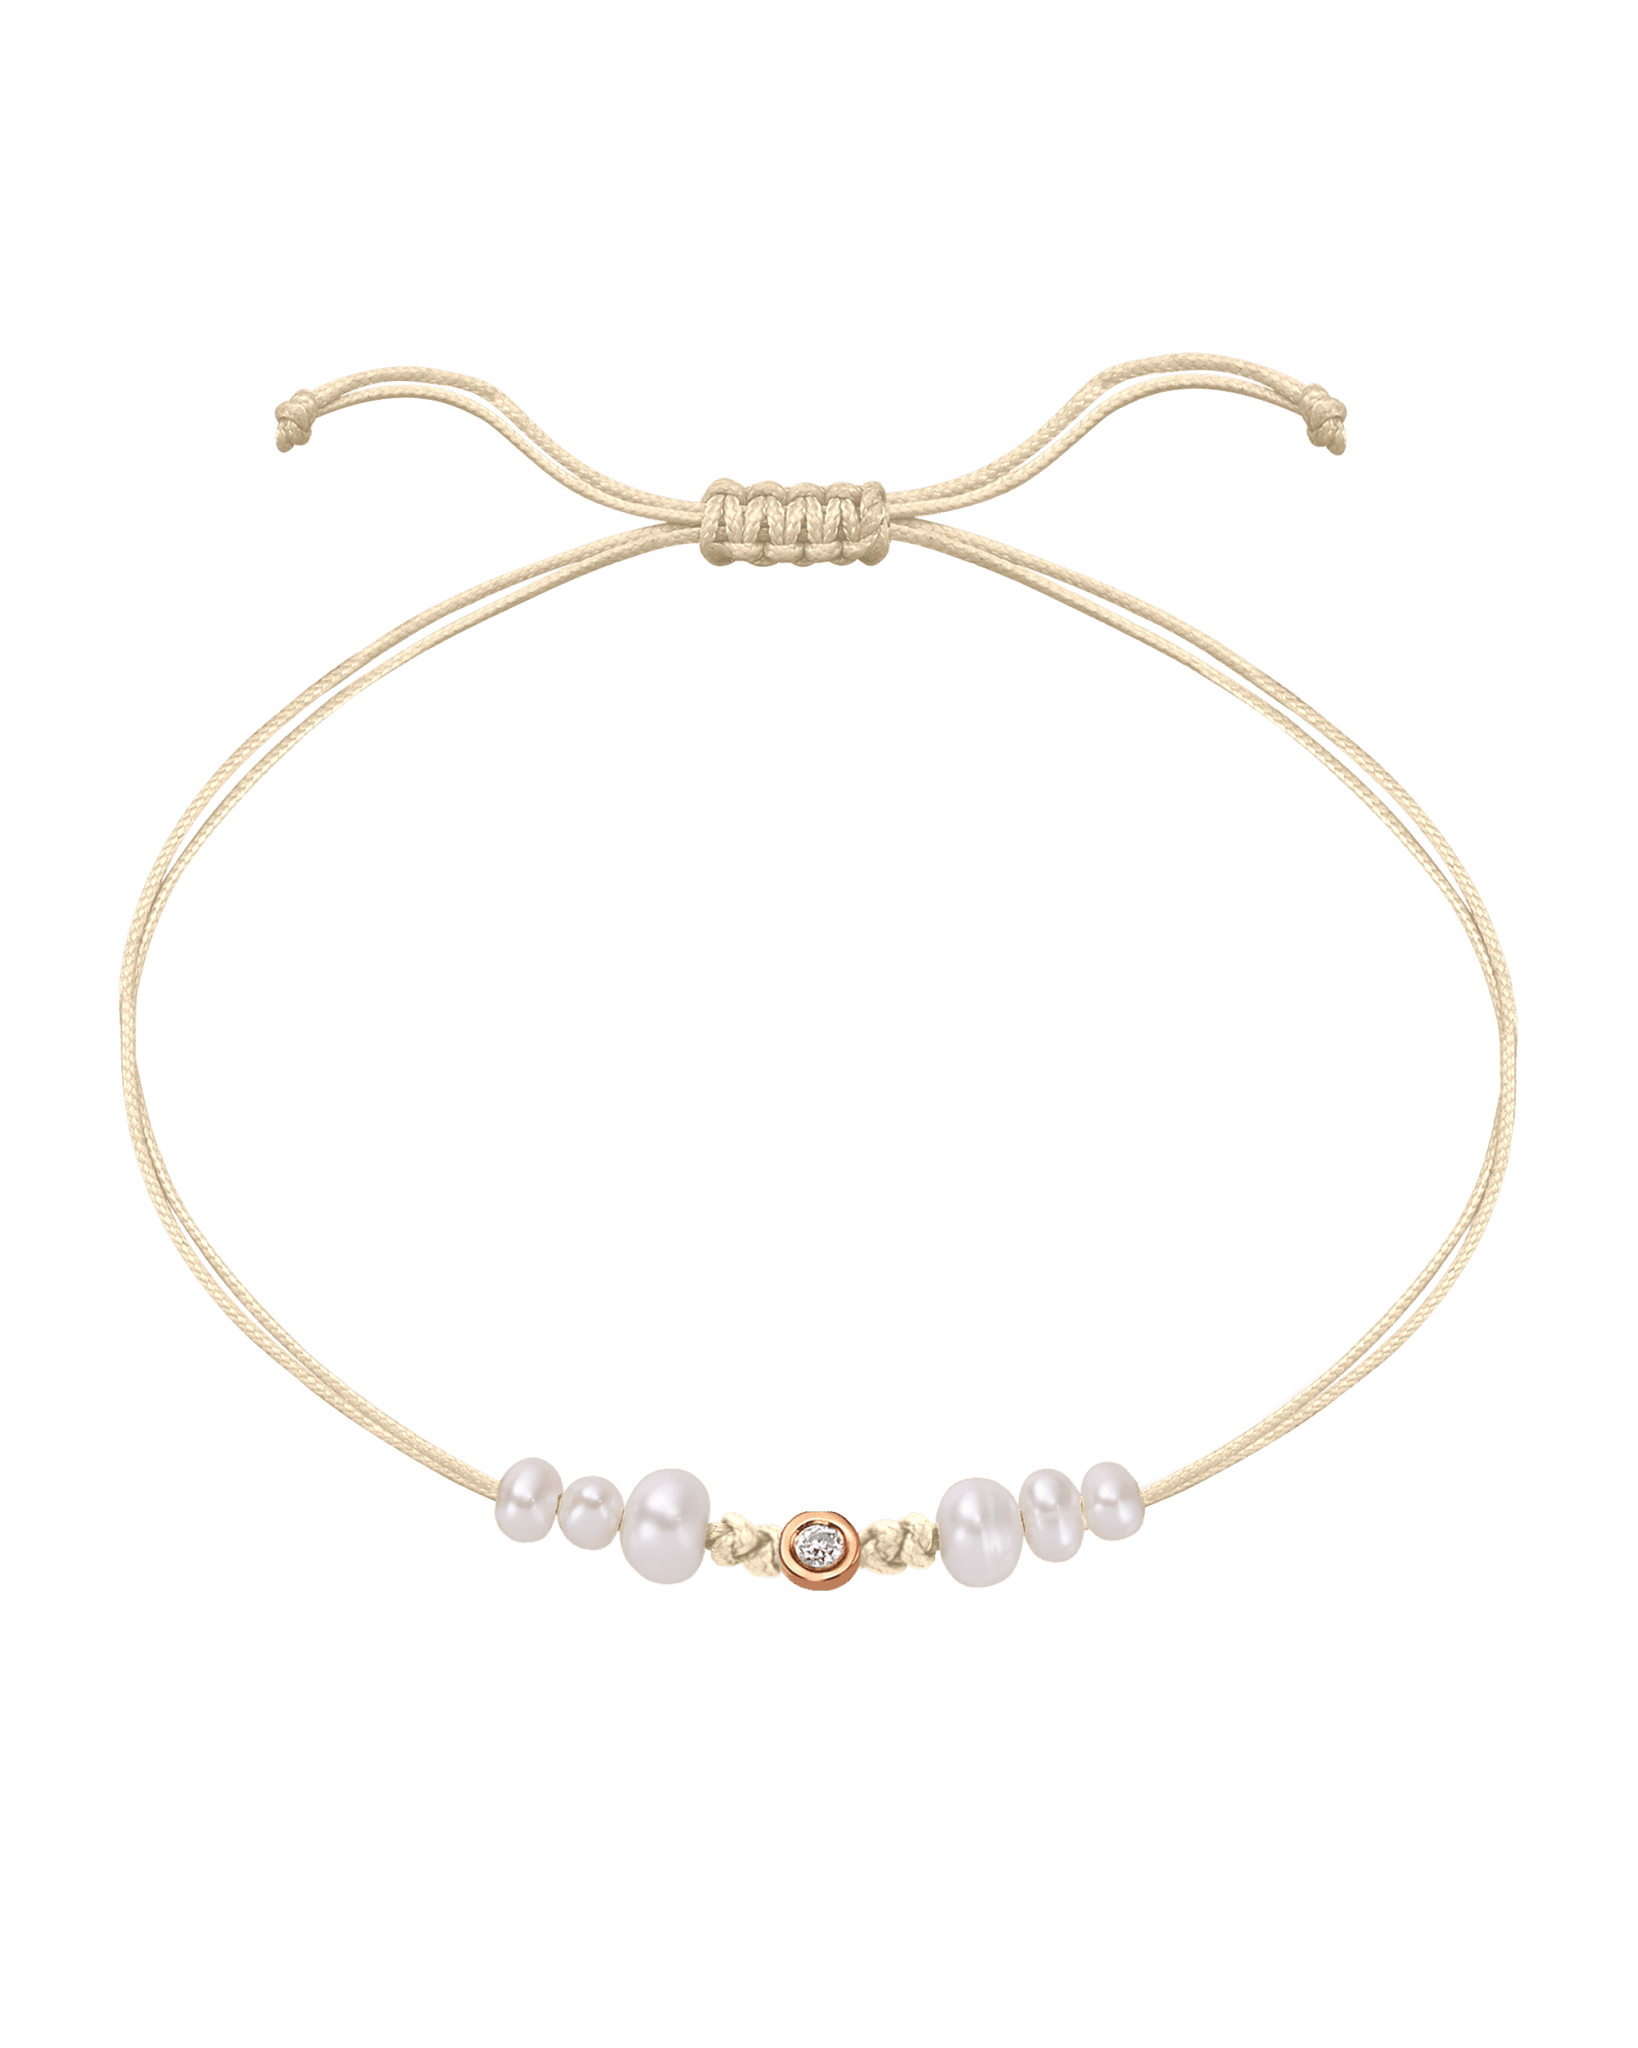 Six Natural Pearl String of Love Bracelet - 14K Rose Gold Bracelet 14K Solid Gold Beige Small: 0.03ct 